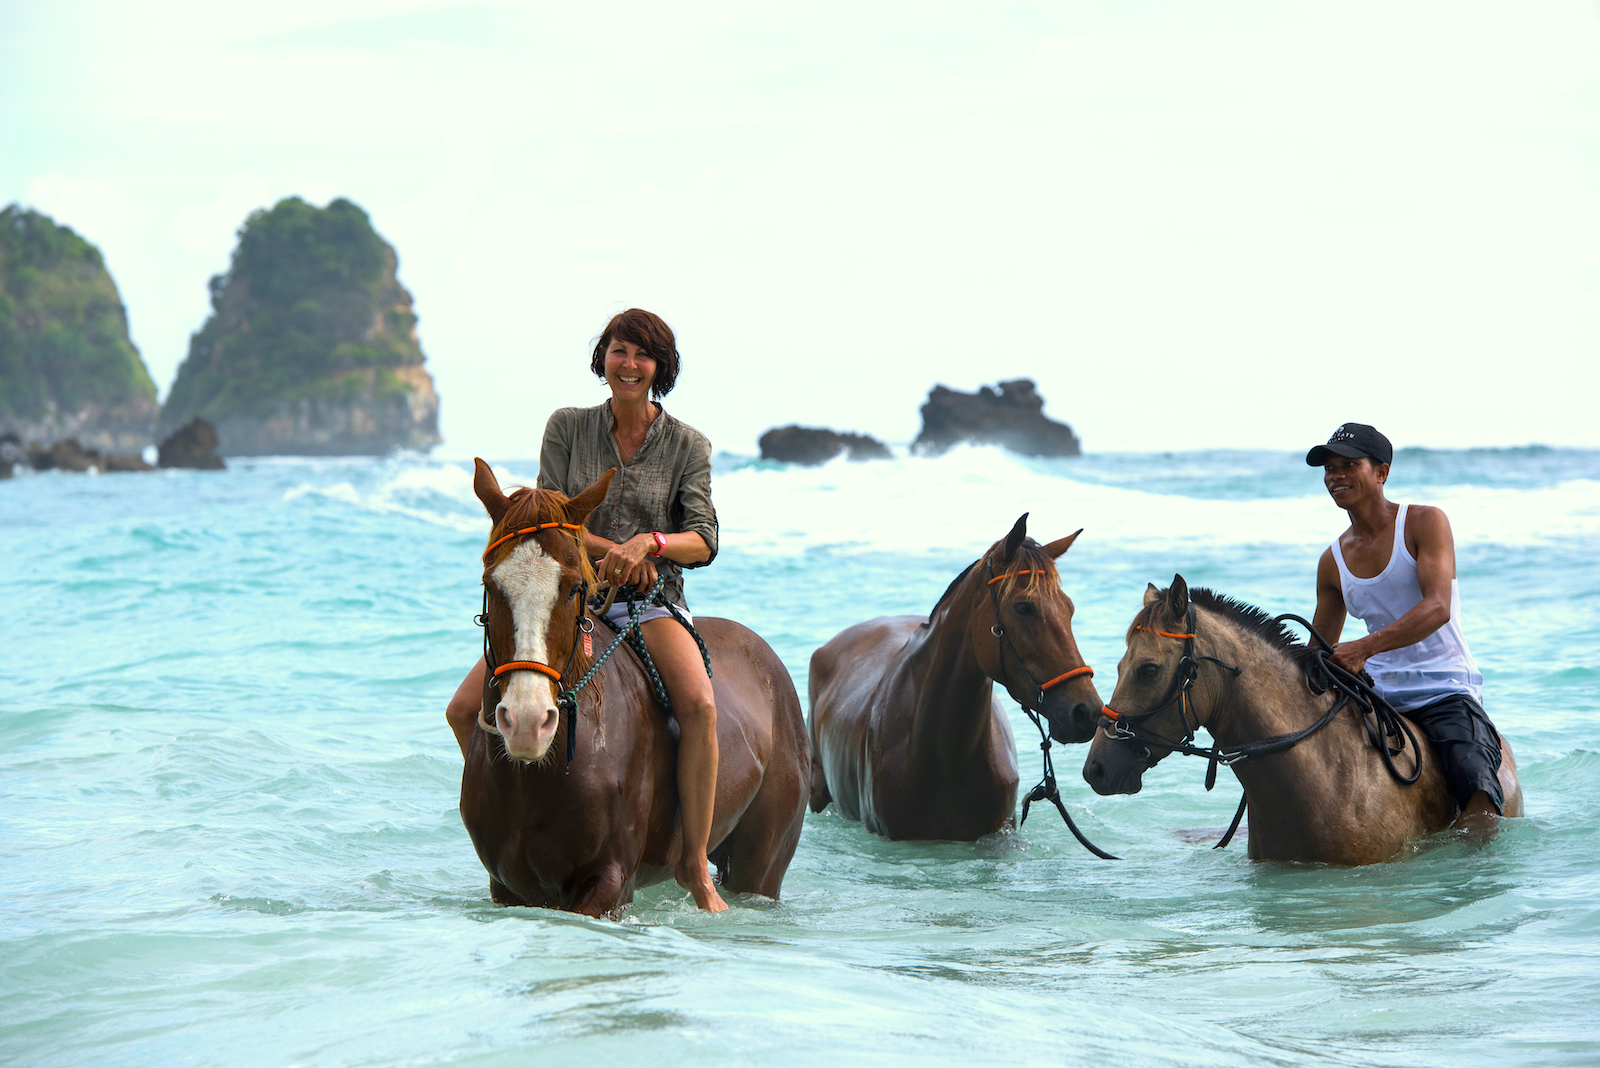 優しい目の馬の背に乗って一緒に海に出ると、なぜか心が洗われるような不思議な感覚